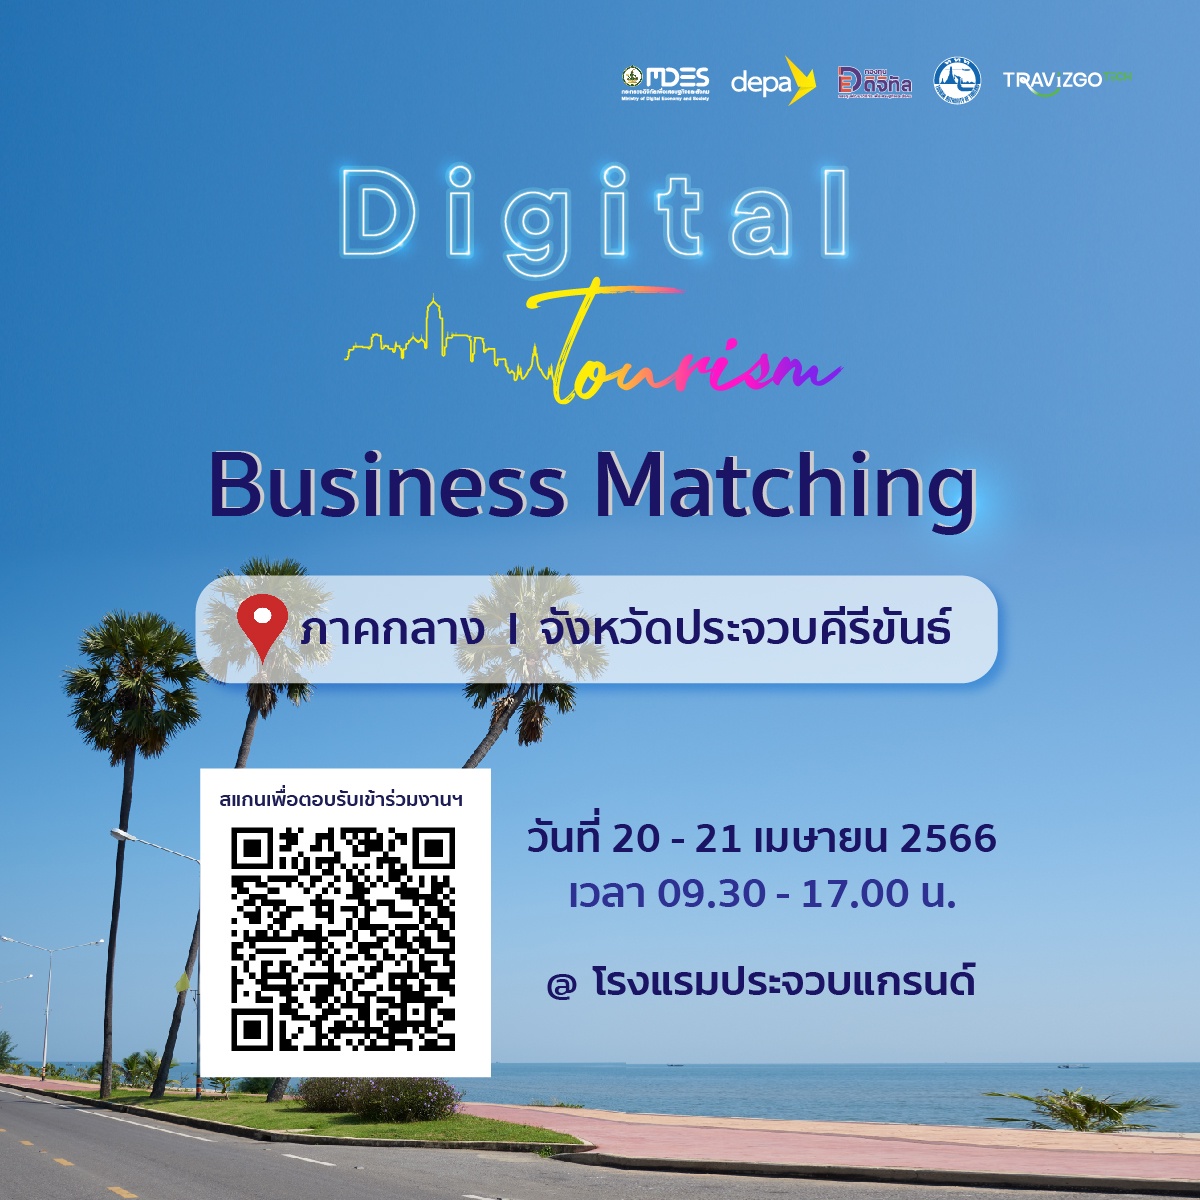 ดีป้า ลุยต่อ เมืองสามอ่าว จ.ประจวบคีรีขันธ์ เดินหน้าจัดกิจกรรม Digital Tourism Business Matching 5 ภูมิภาค ครั้งที่ 2